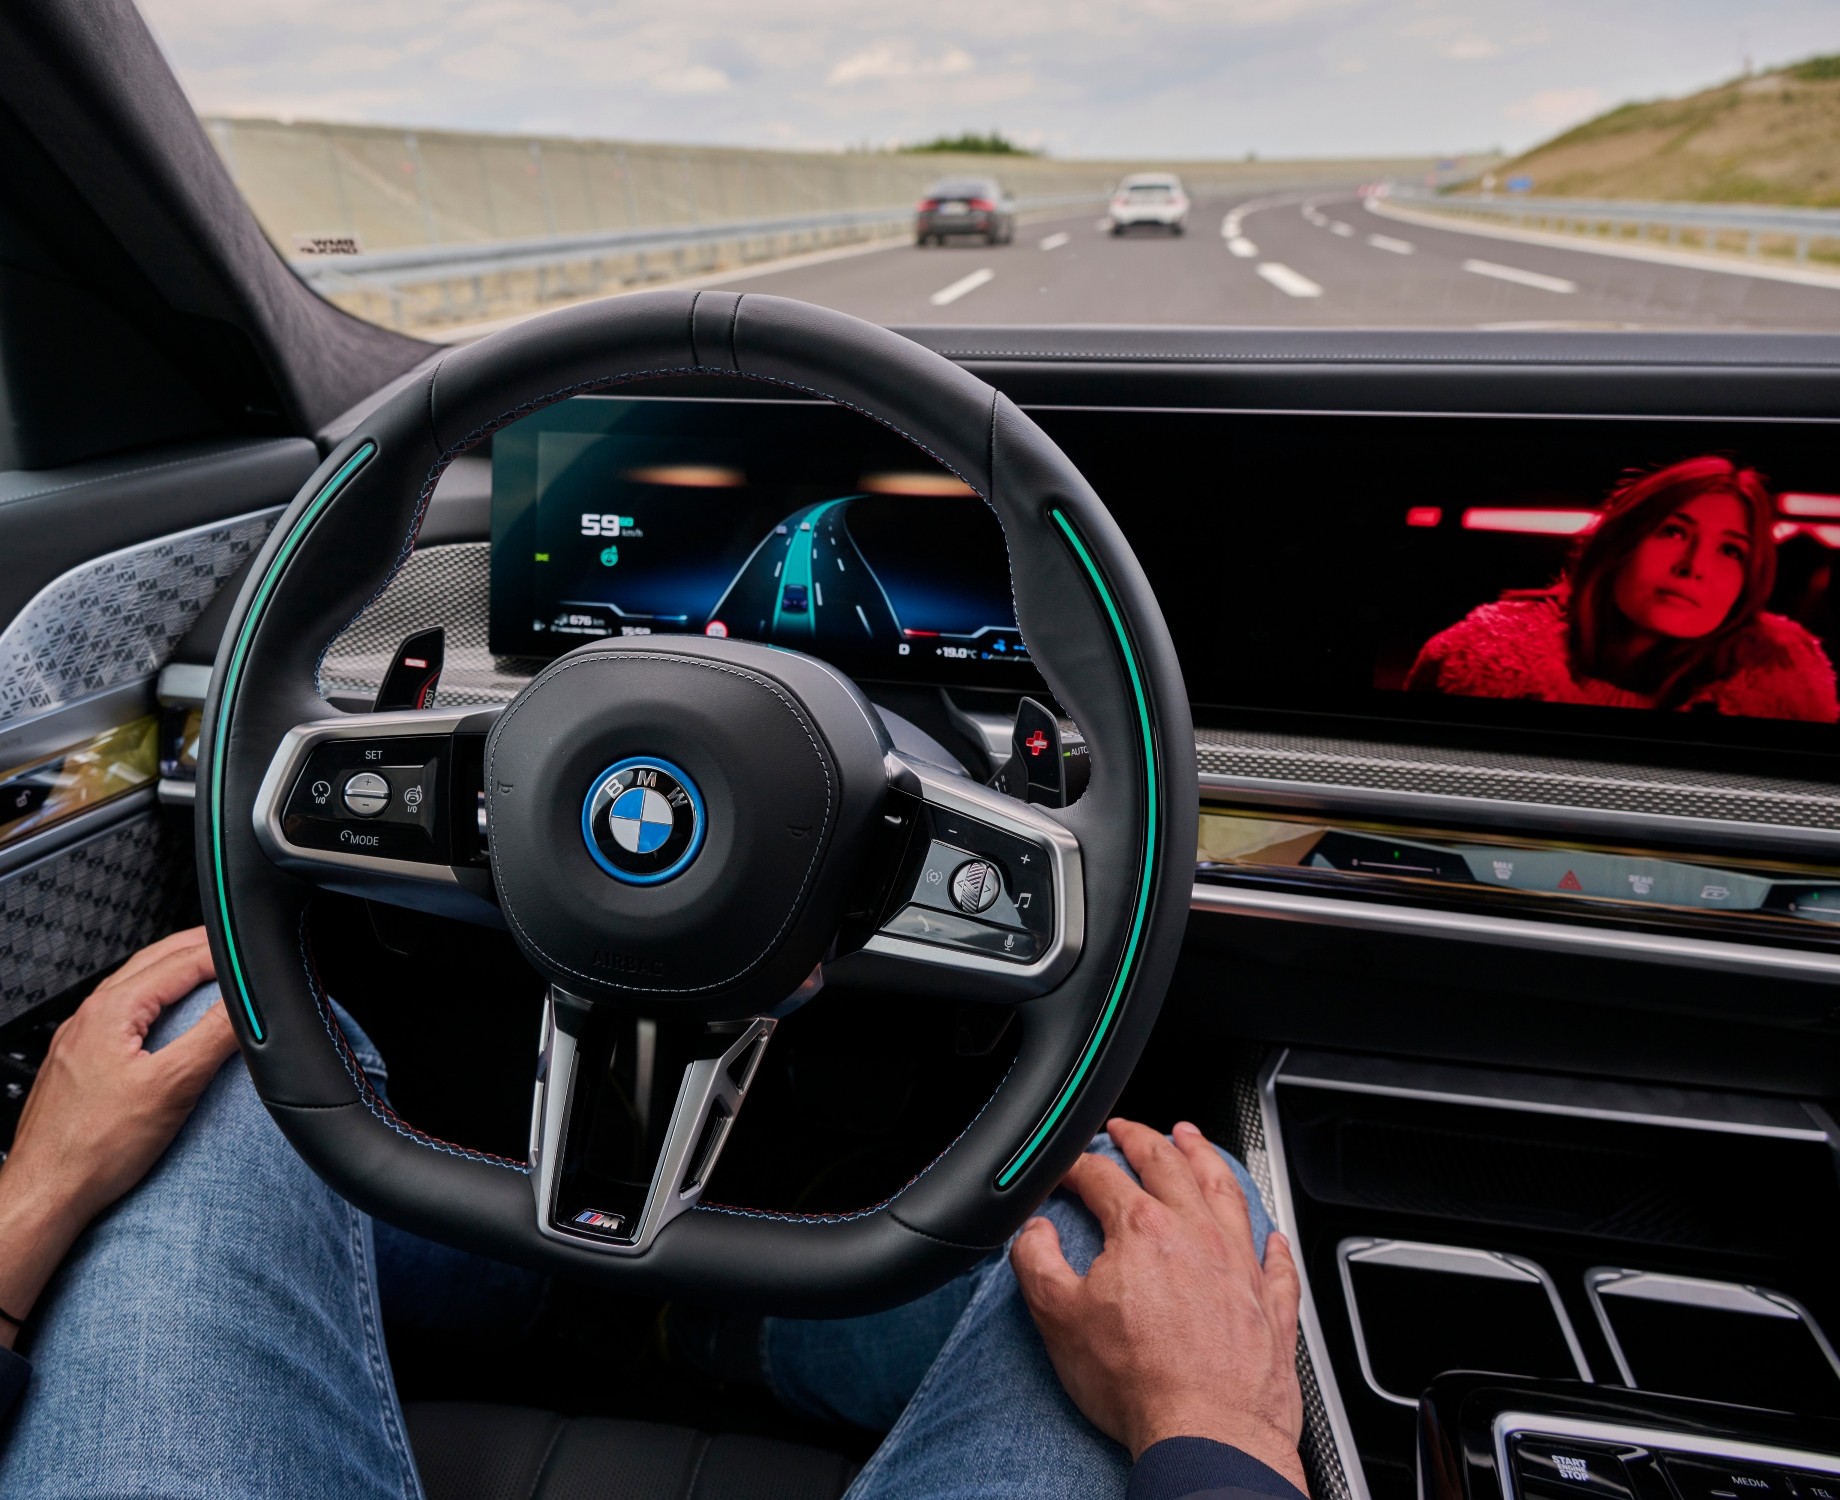 BMW equipa novos modelos com direção autônoma nível 3